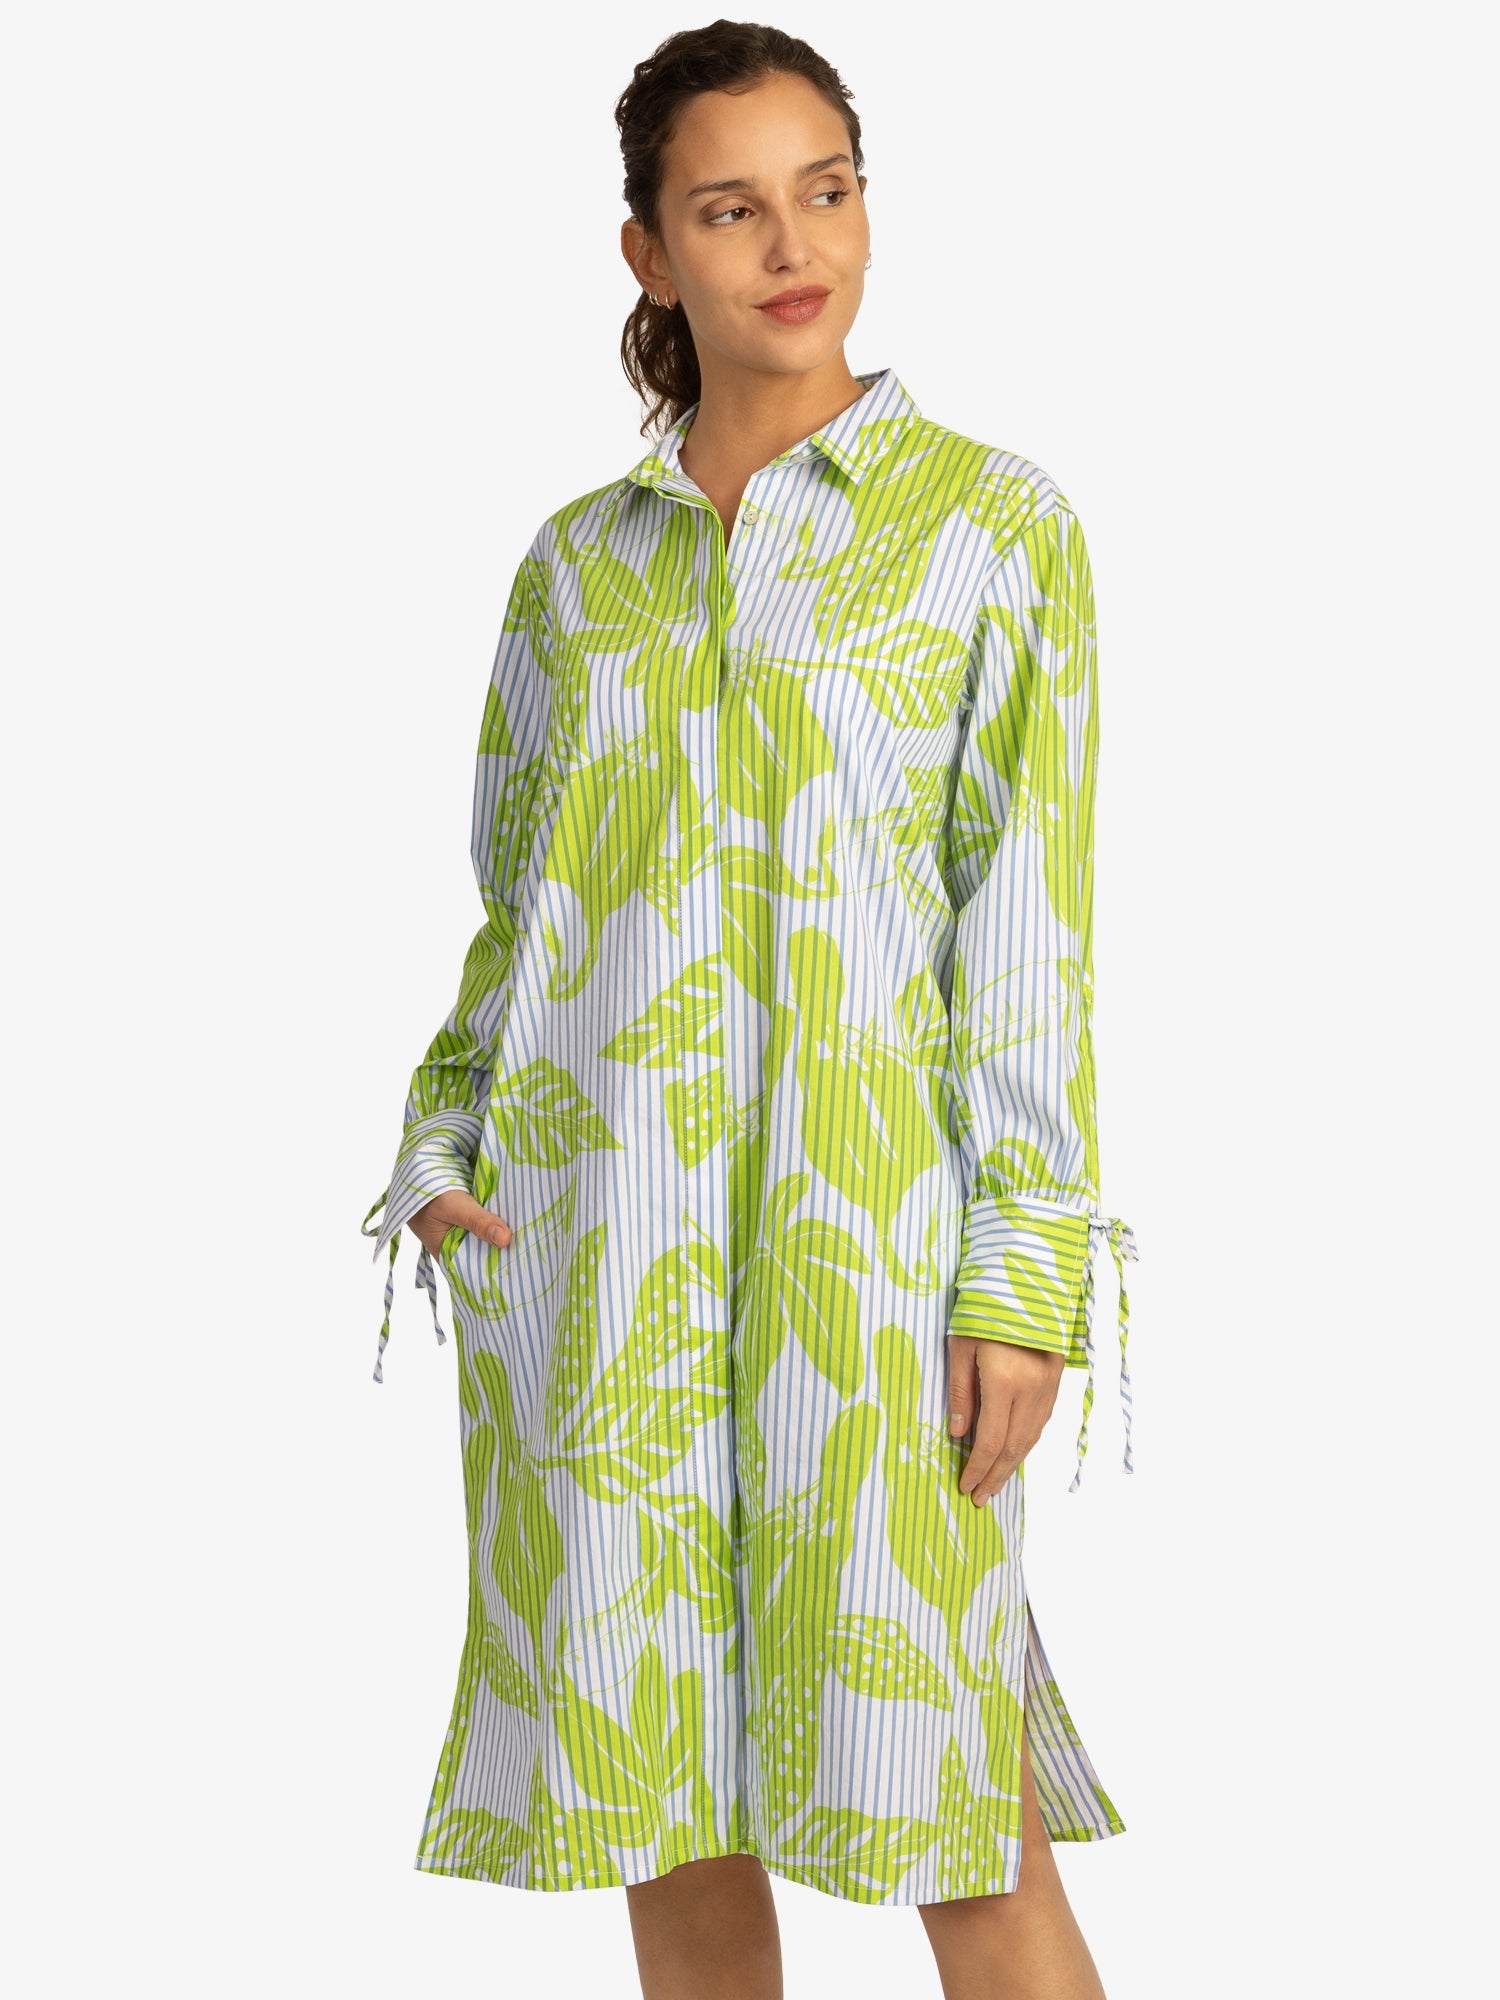 Mint & Mia Sommer Kleid aus hochwertigem Baumwolle Material mit Hemdkragen | weiß-lime